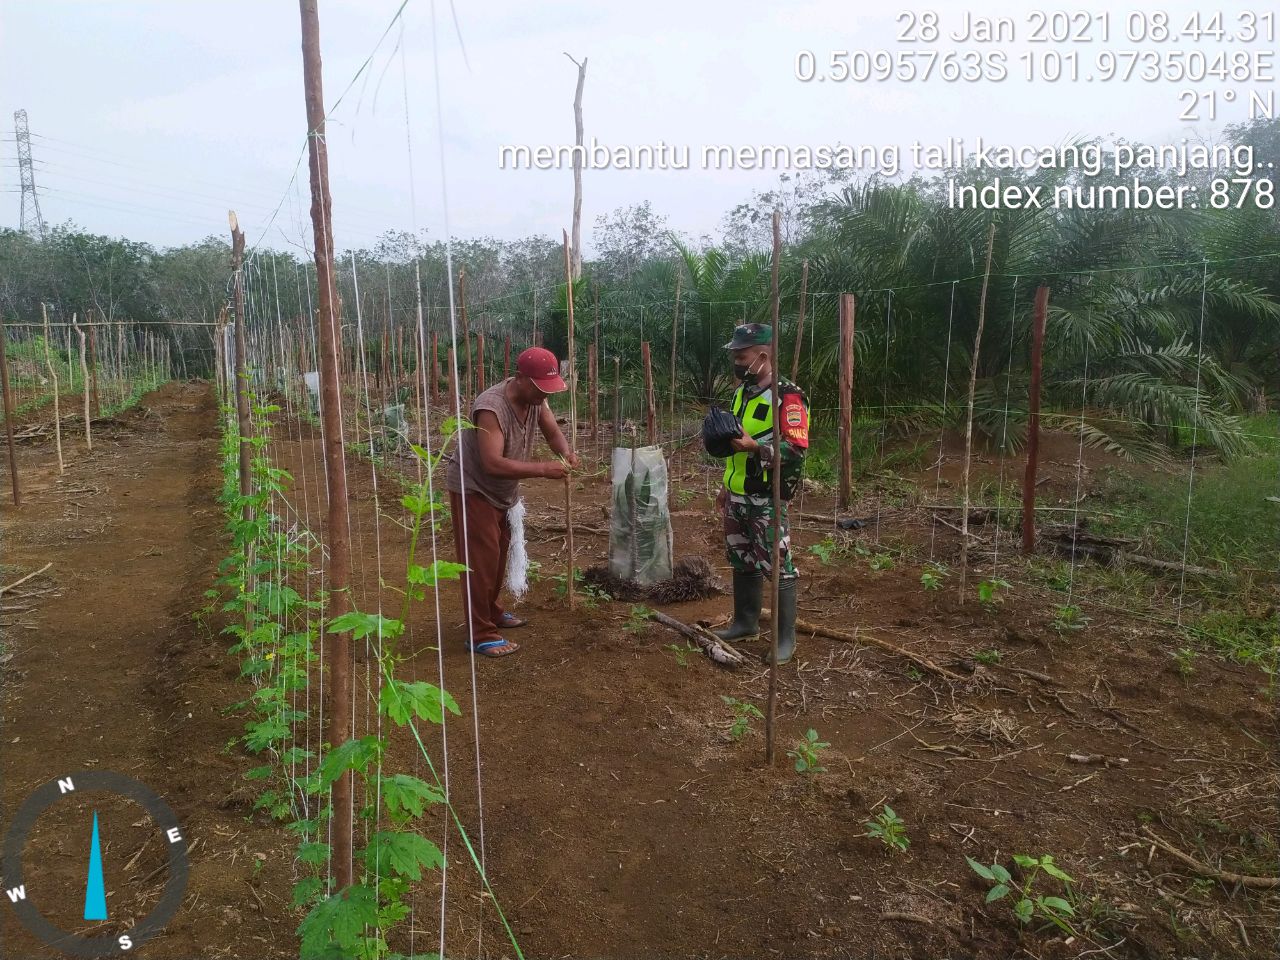 Komsos Bersama Petani, Sertu Wahyu Liquisa Membantu Petani Rawat Kacang Panjang